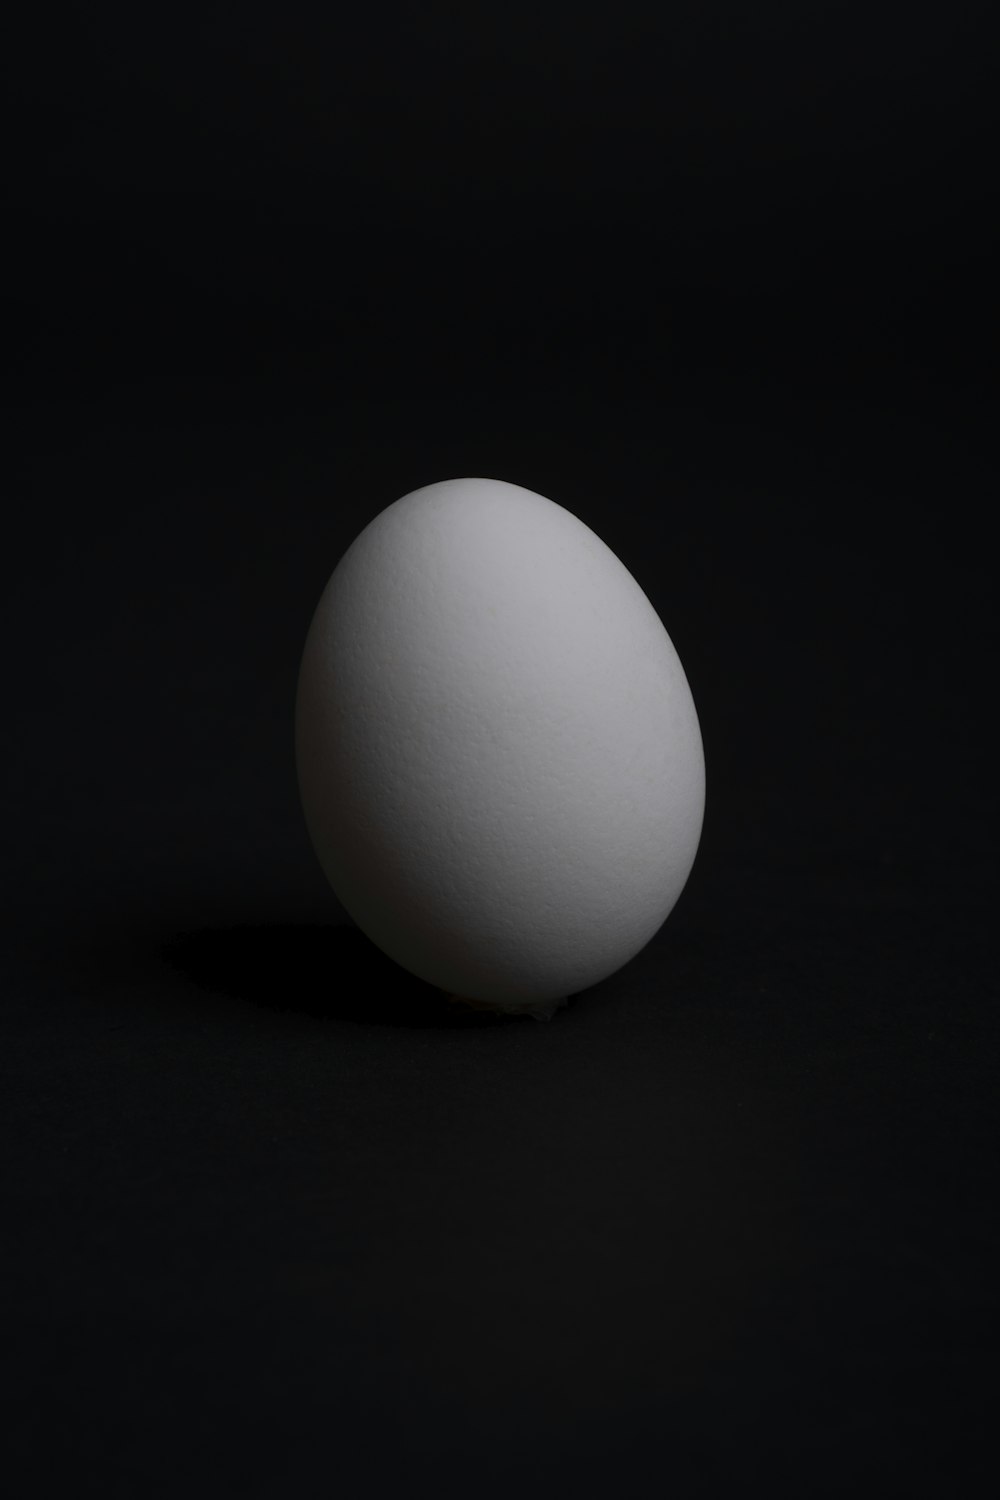 white egg on black surface